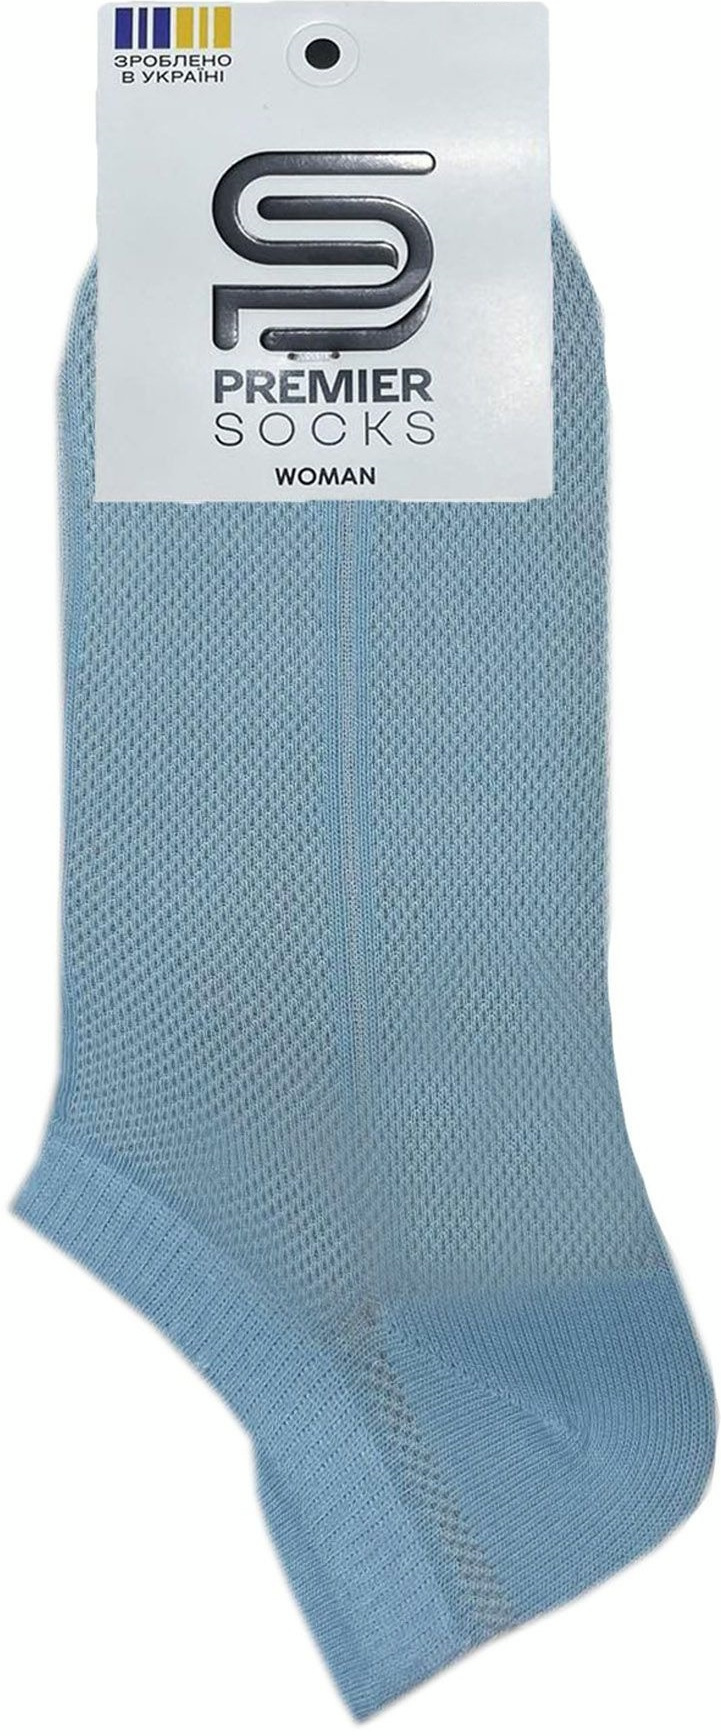 Шкарпетки жіночі Premier Socks 36-40 1 пара блакитні (4820163318769)фото2